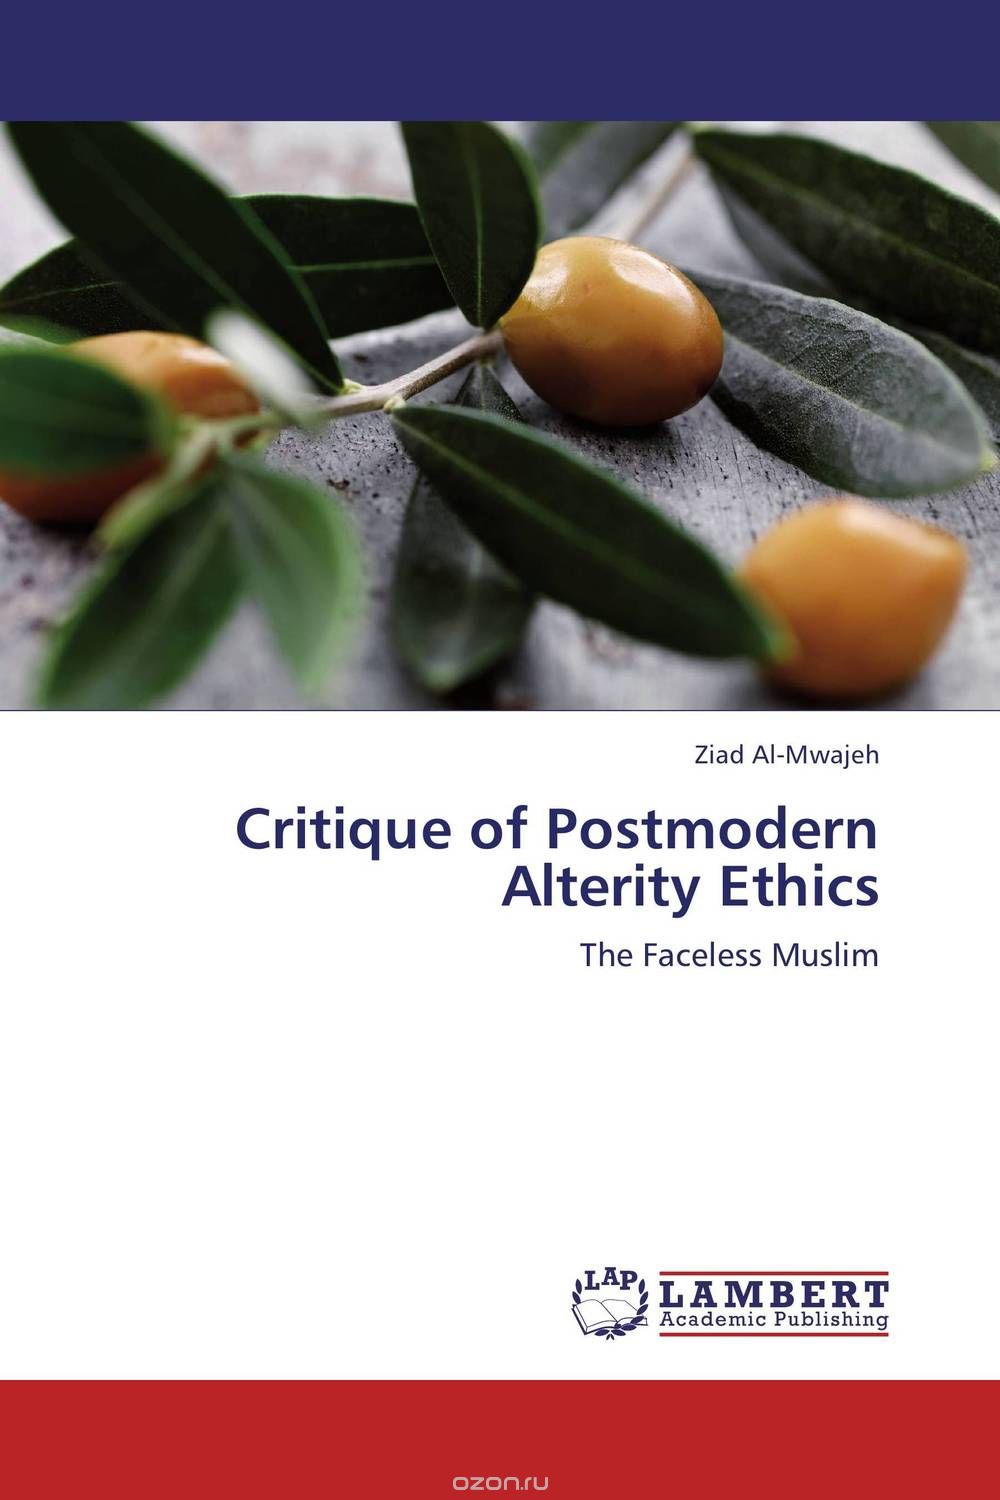 Скачать книгу "Critique of Postmodern Alterity Ethics"